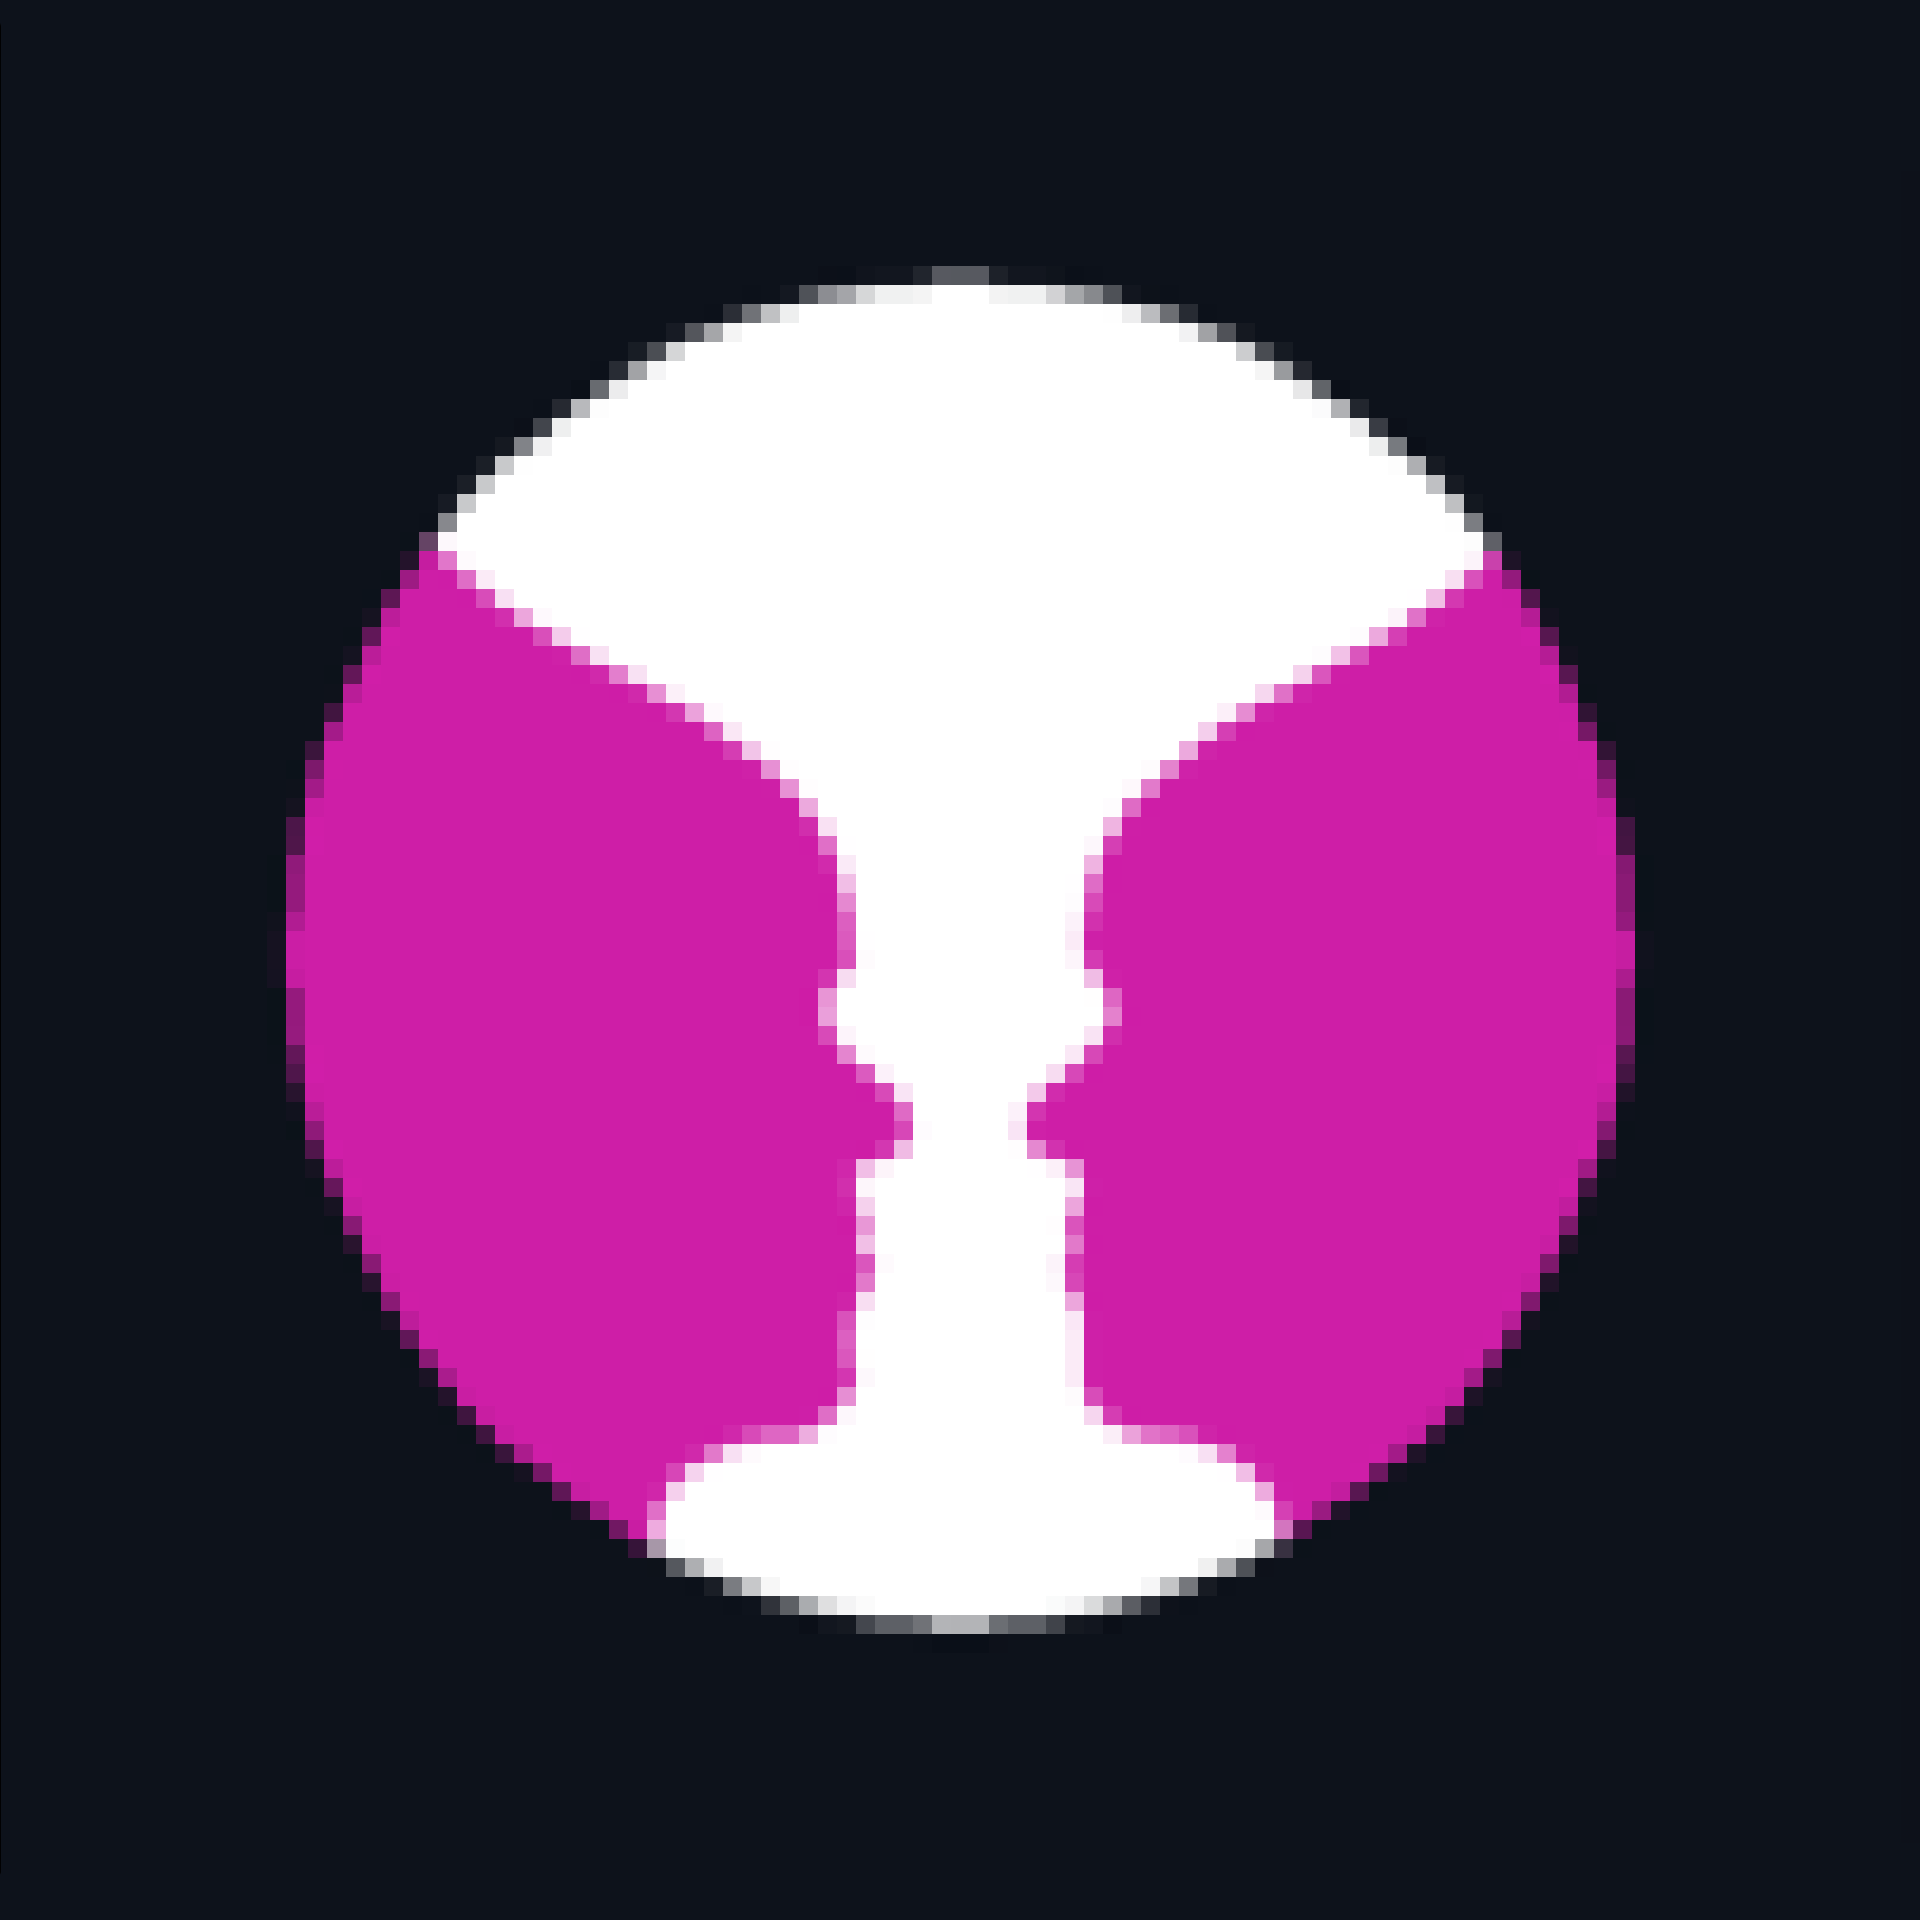 circle_logo